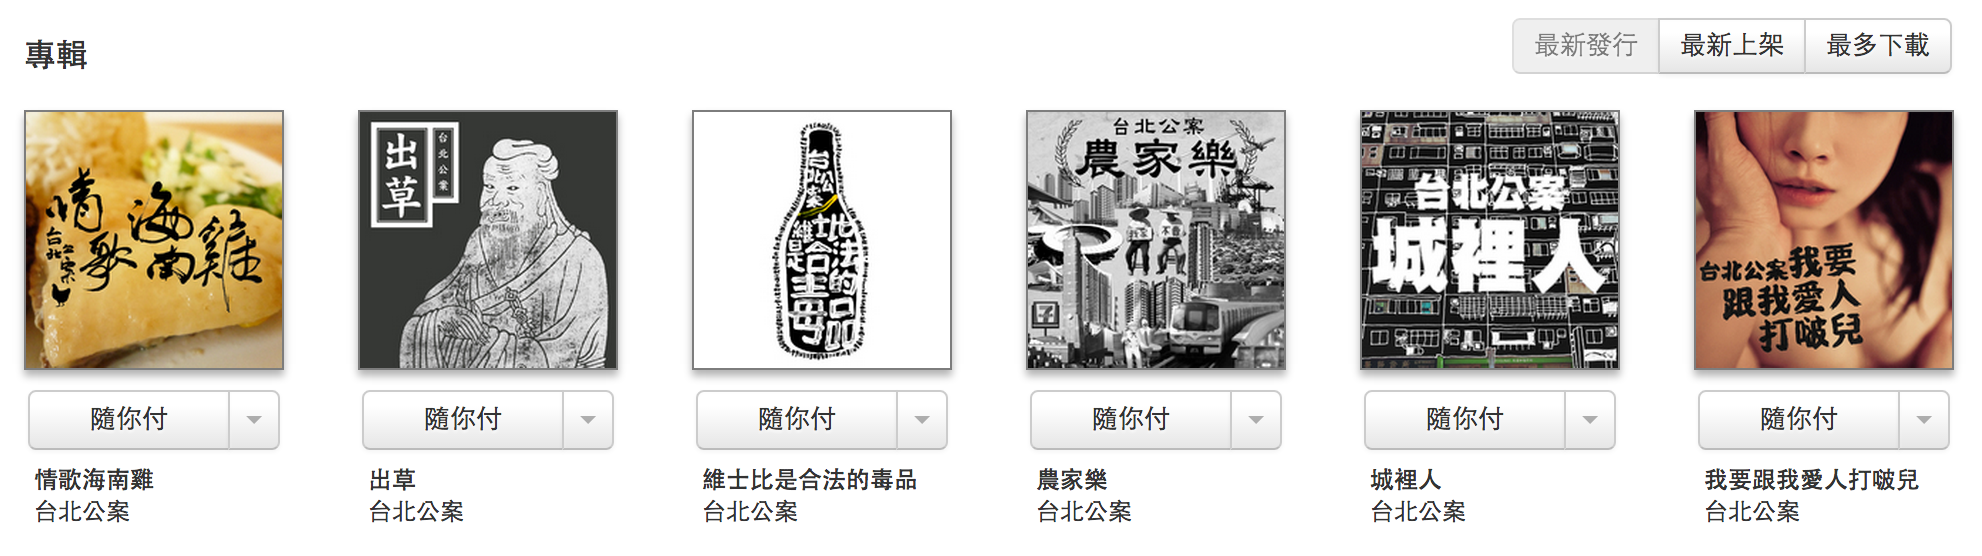 創作樂團台北公案有多張作品供樂迷「隨你付」下載